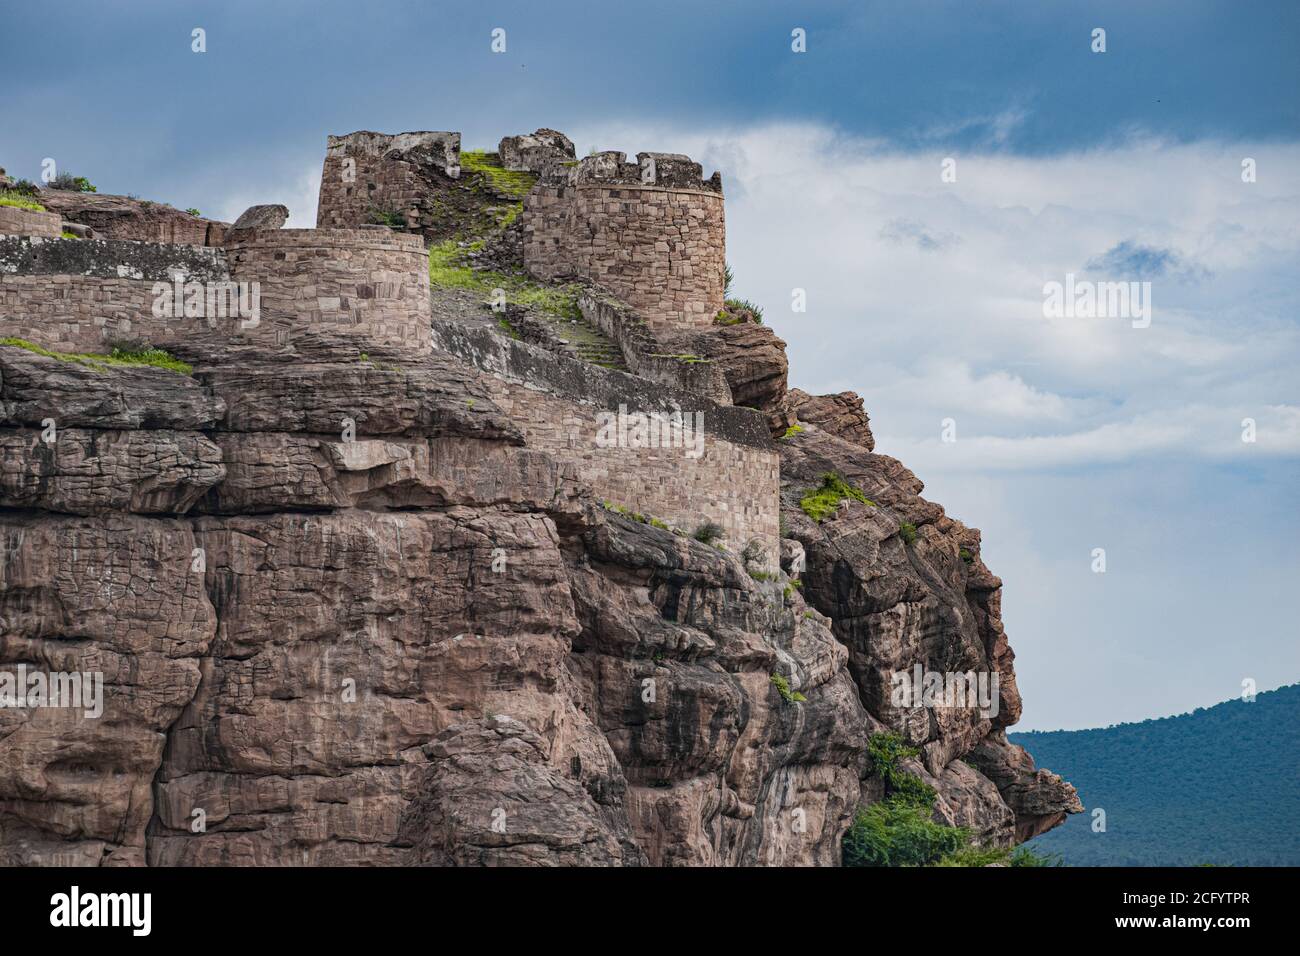 Eine schöne Festung an der Spitze des Hügels von tippu sulthan in badami gebaut. Stockfoto